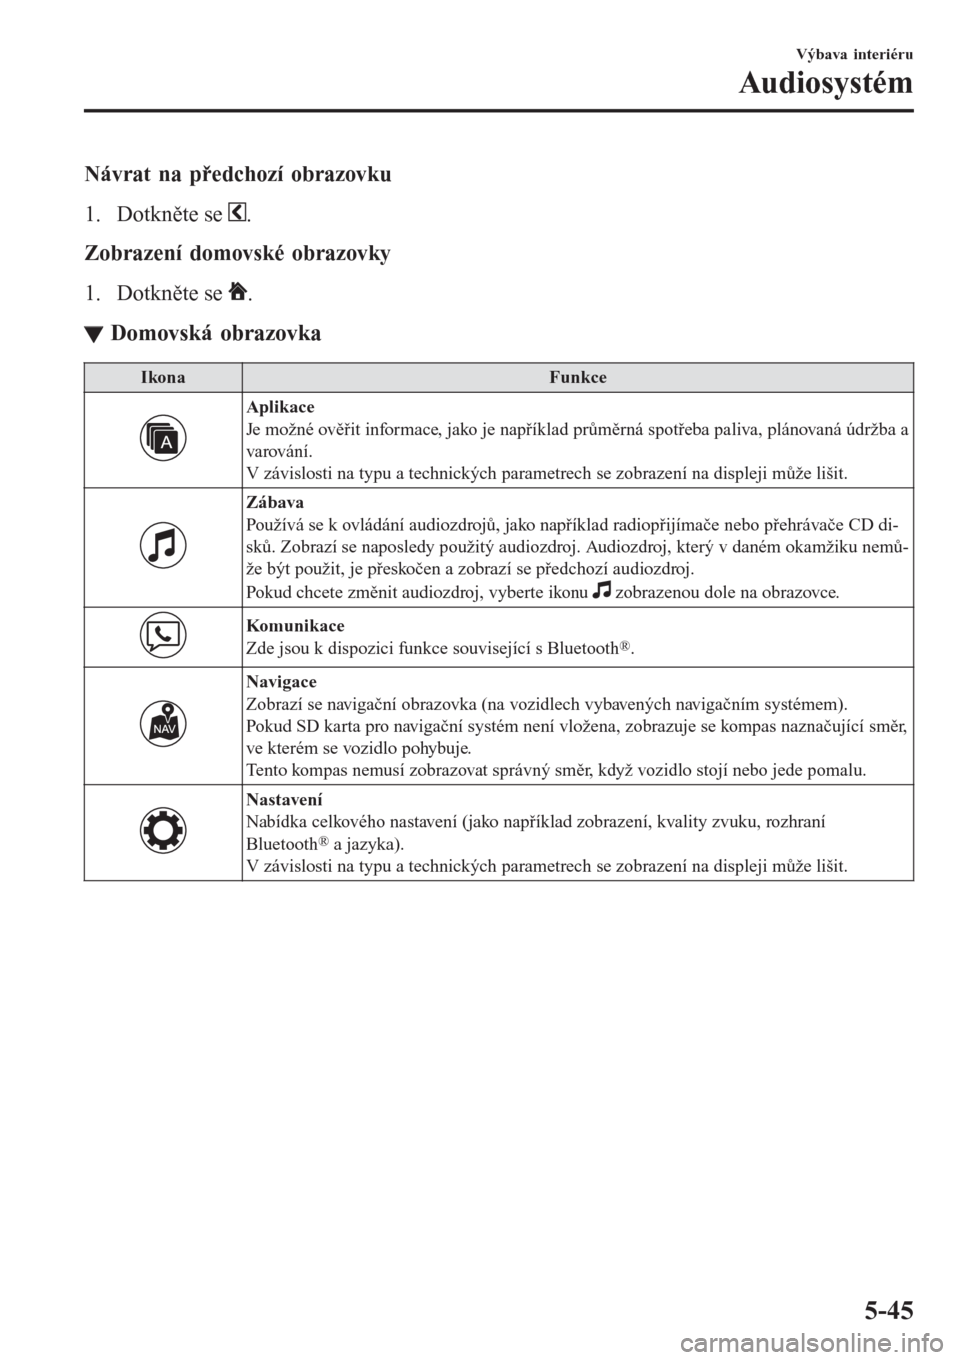 MAZDA MODEL CX-3 2016  Návod k obsluze (in Czech) Návrat na předchozí obrazovku
1. Dotkněte se 
.
Zobrazení domovské obrazovky
1. Dotkněte se 
.
ttDomovská obrazovka
IkonaFunkce
Aplikace
Je možné ověřit informace, jako je například prů